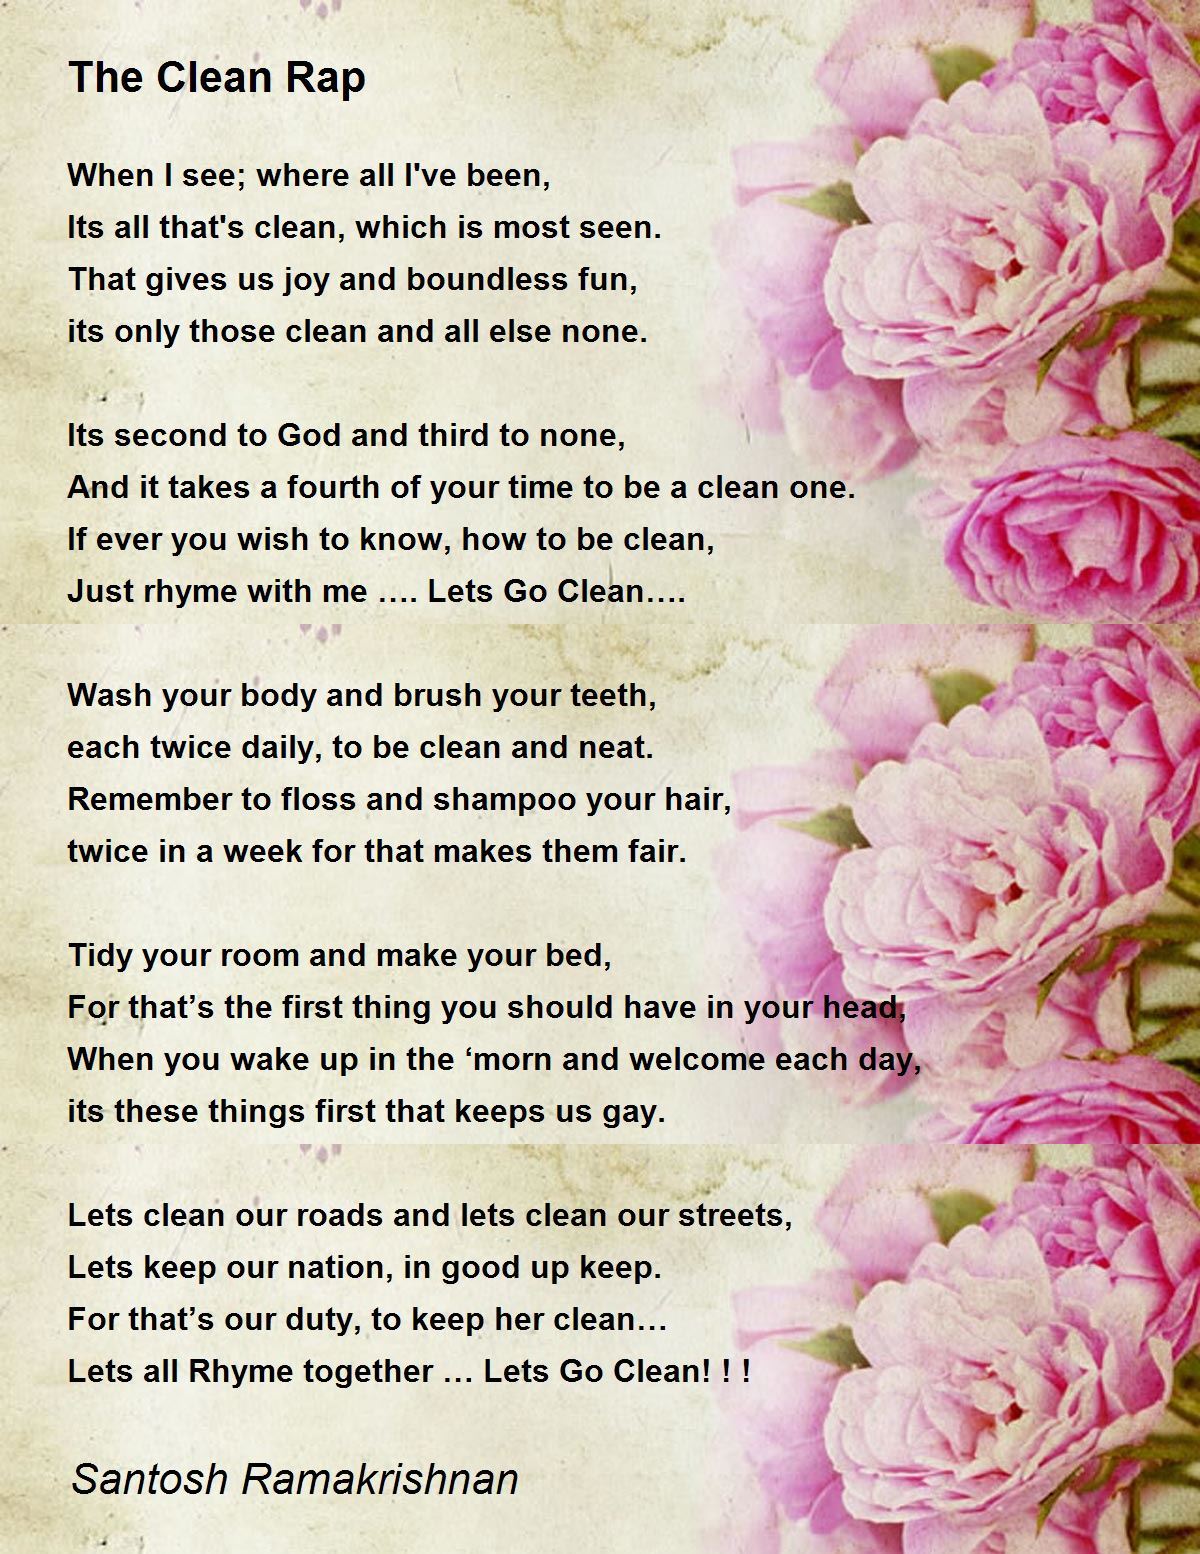 The Clean Rap - The Clean Rap Poem by Santosh Ramakrishnan